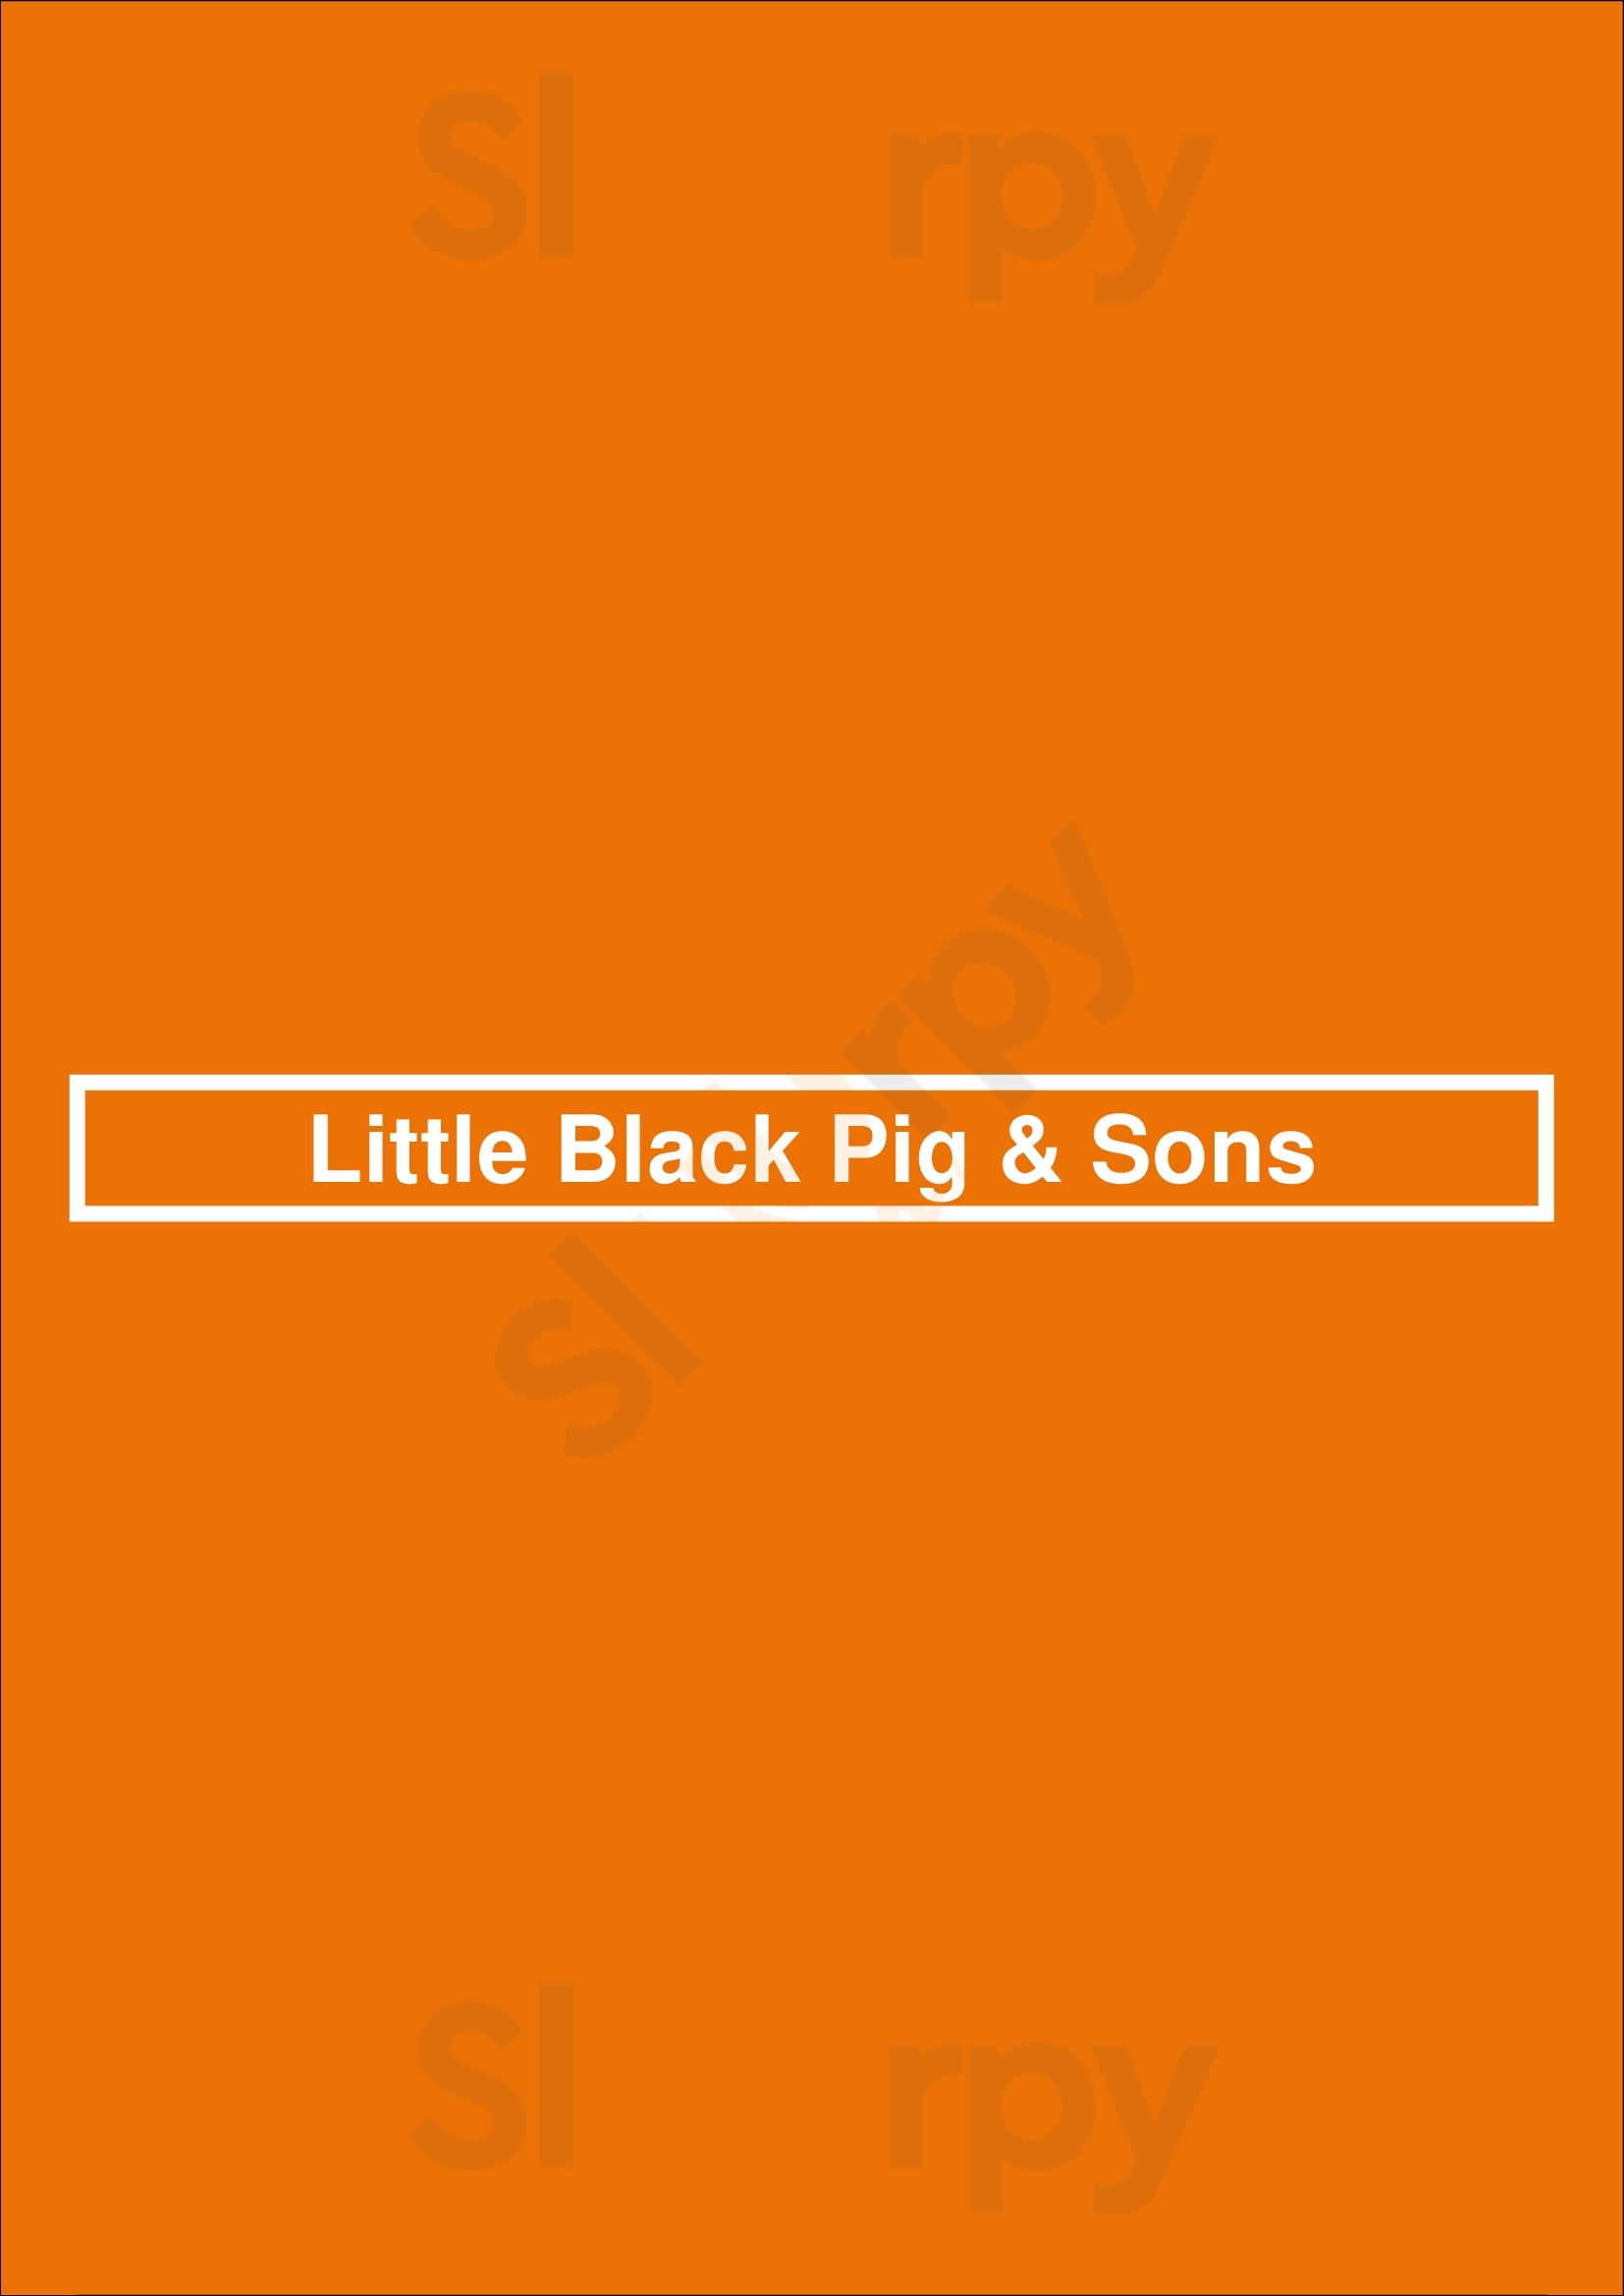 Little Black Pig & Sons Heidelberg Menu - 1